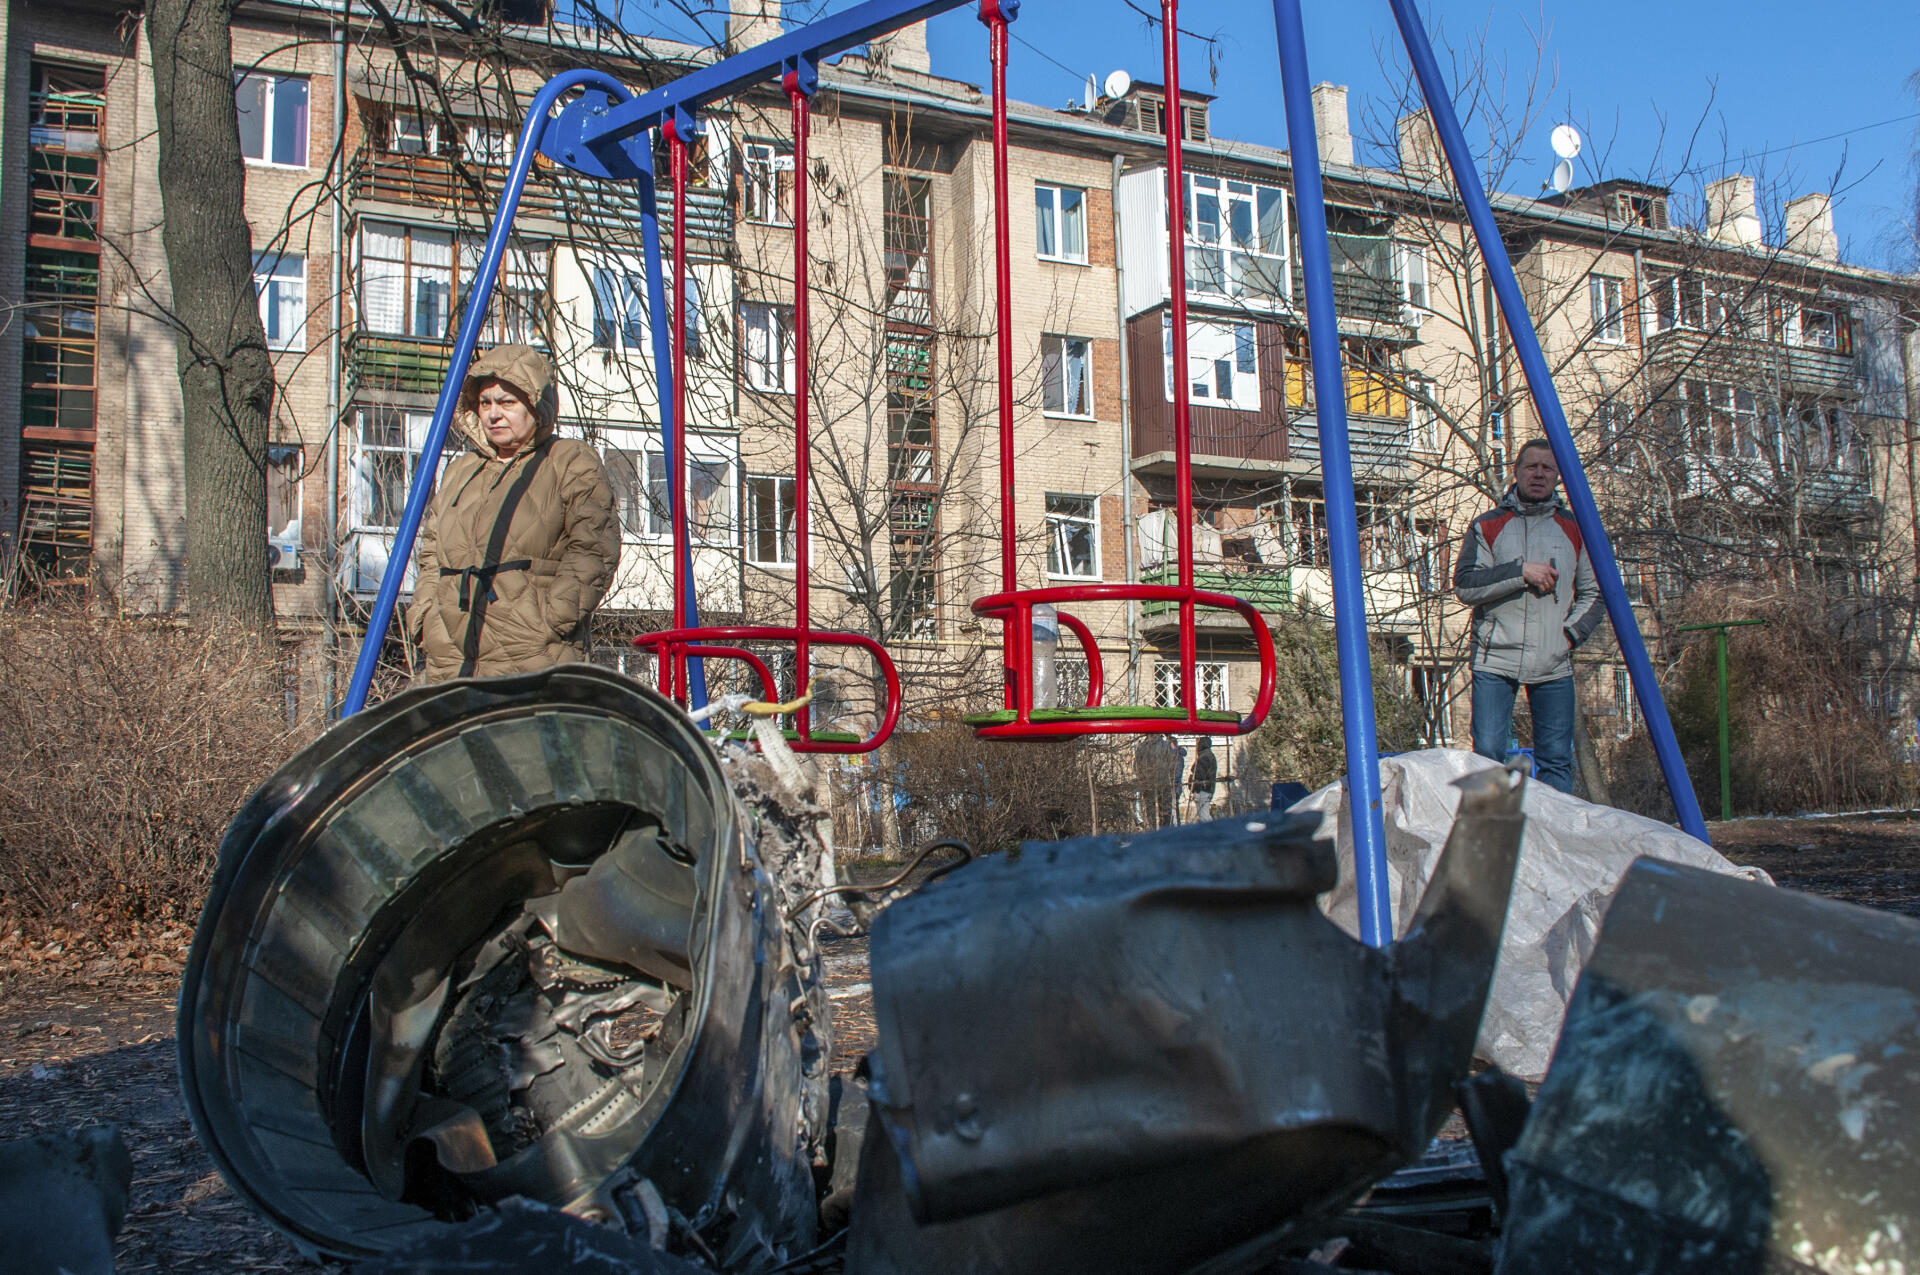 Fragmentos de equipo militar en la calle luego de un aparente ataque ruso en Kharkiv, Ucrania, el jueves 24 de febrero de 2022.